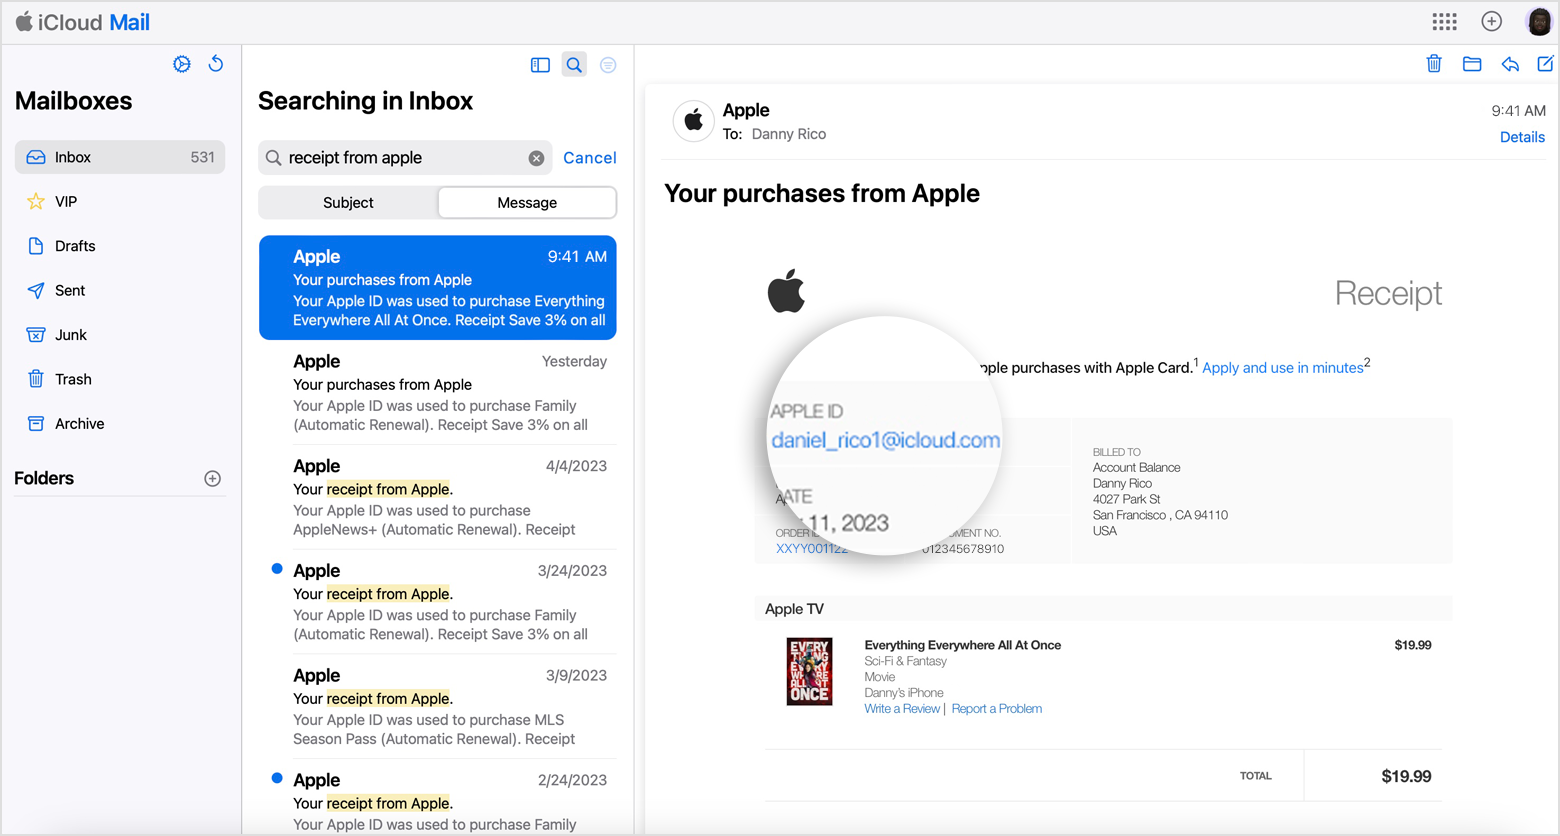 Facture reçue par e-mail indiquant l’identifiant Apple utilisé pour un achat auprès d’Apple